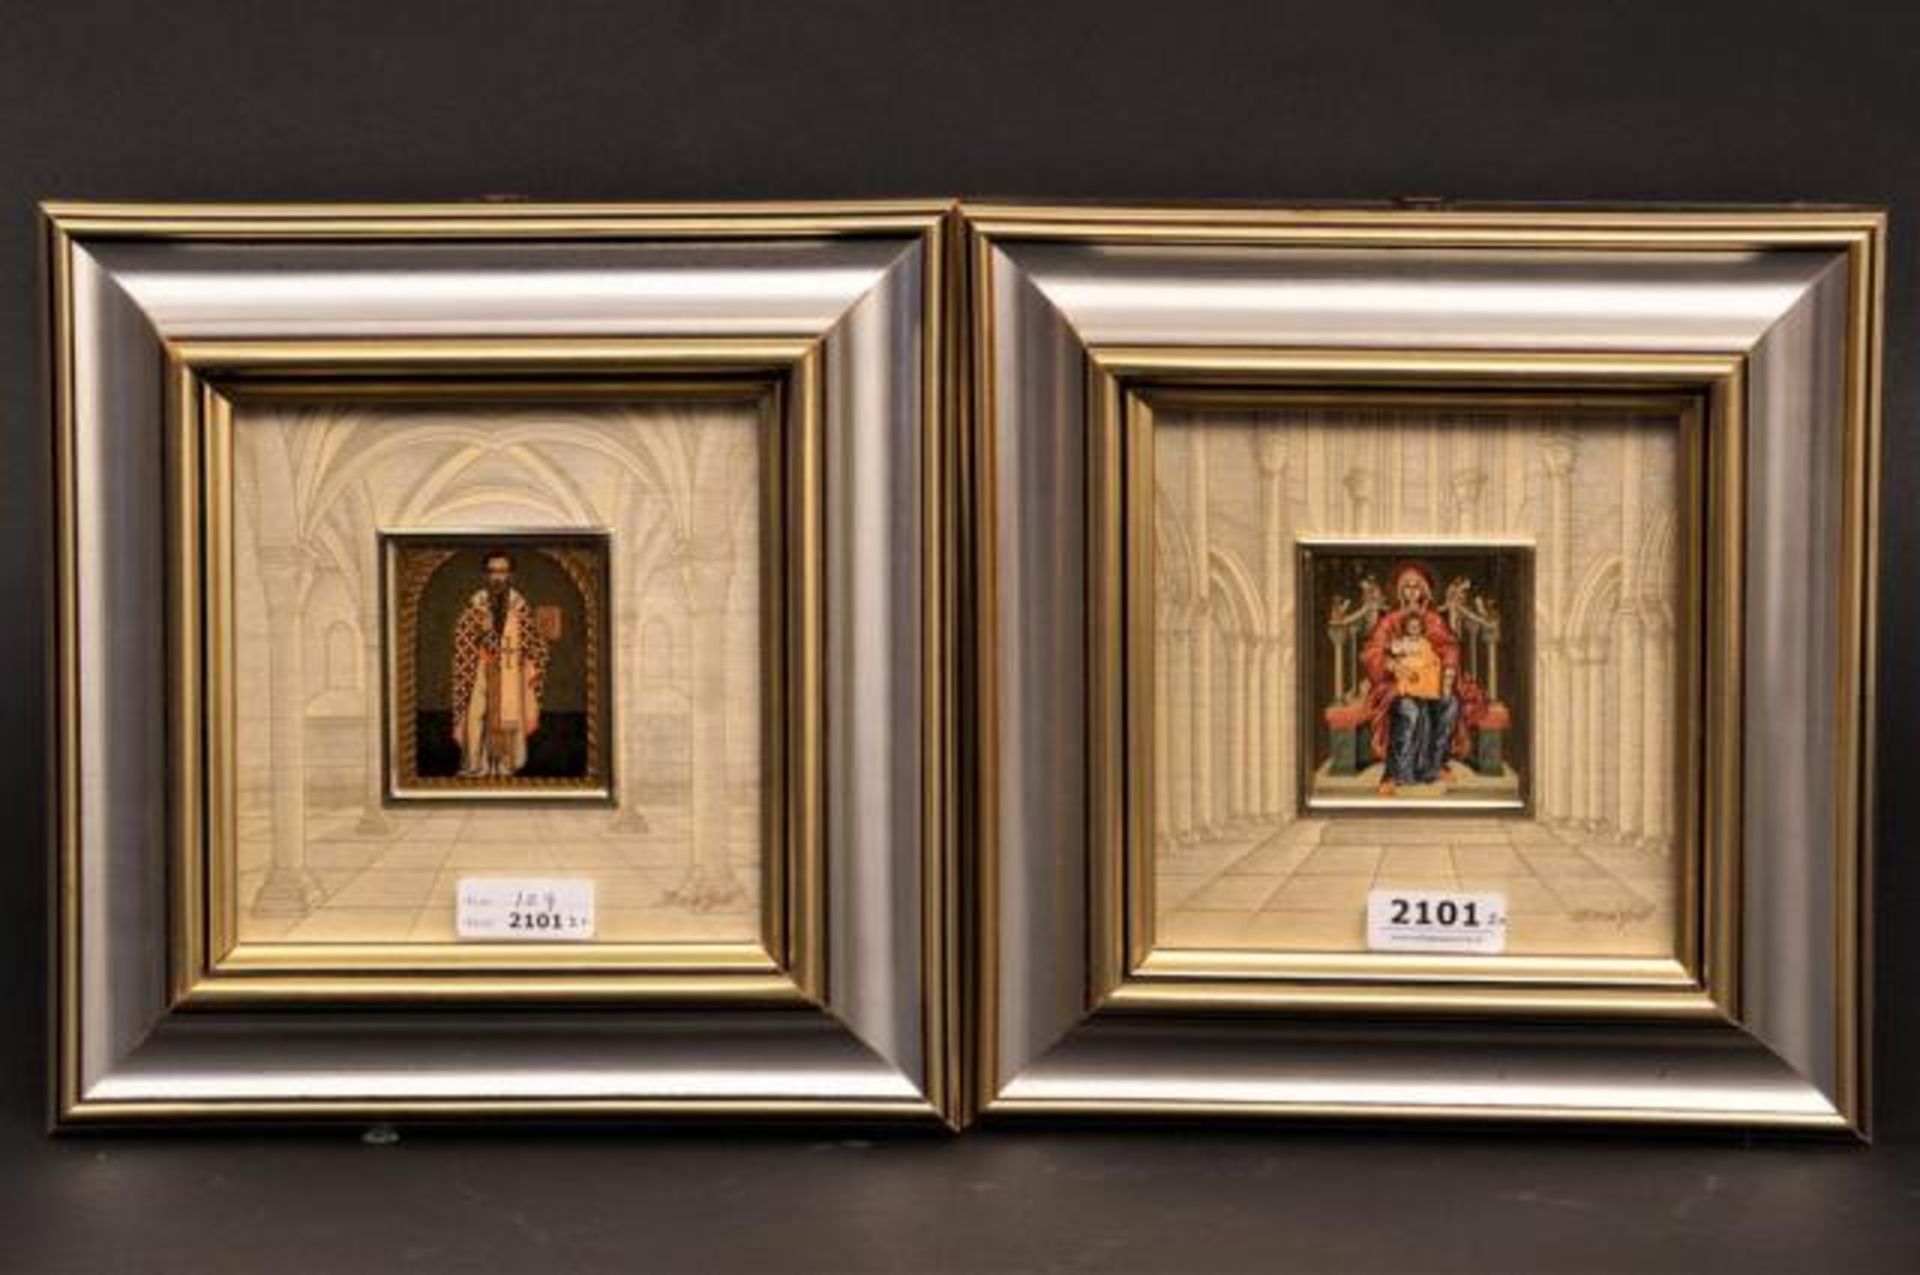 Two gilt icons (prints), 20th century, dim. 6 x 5 cm (2x)